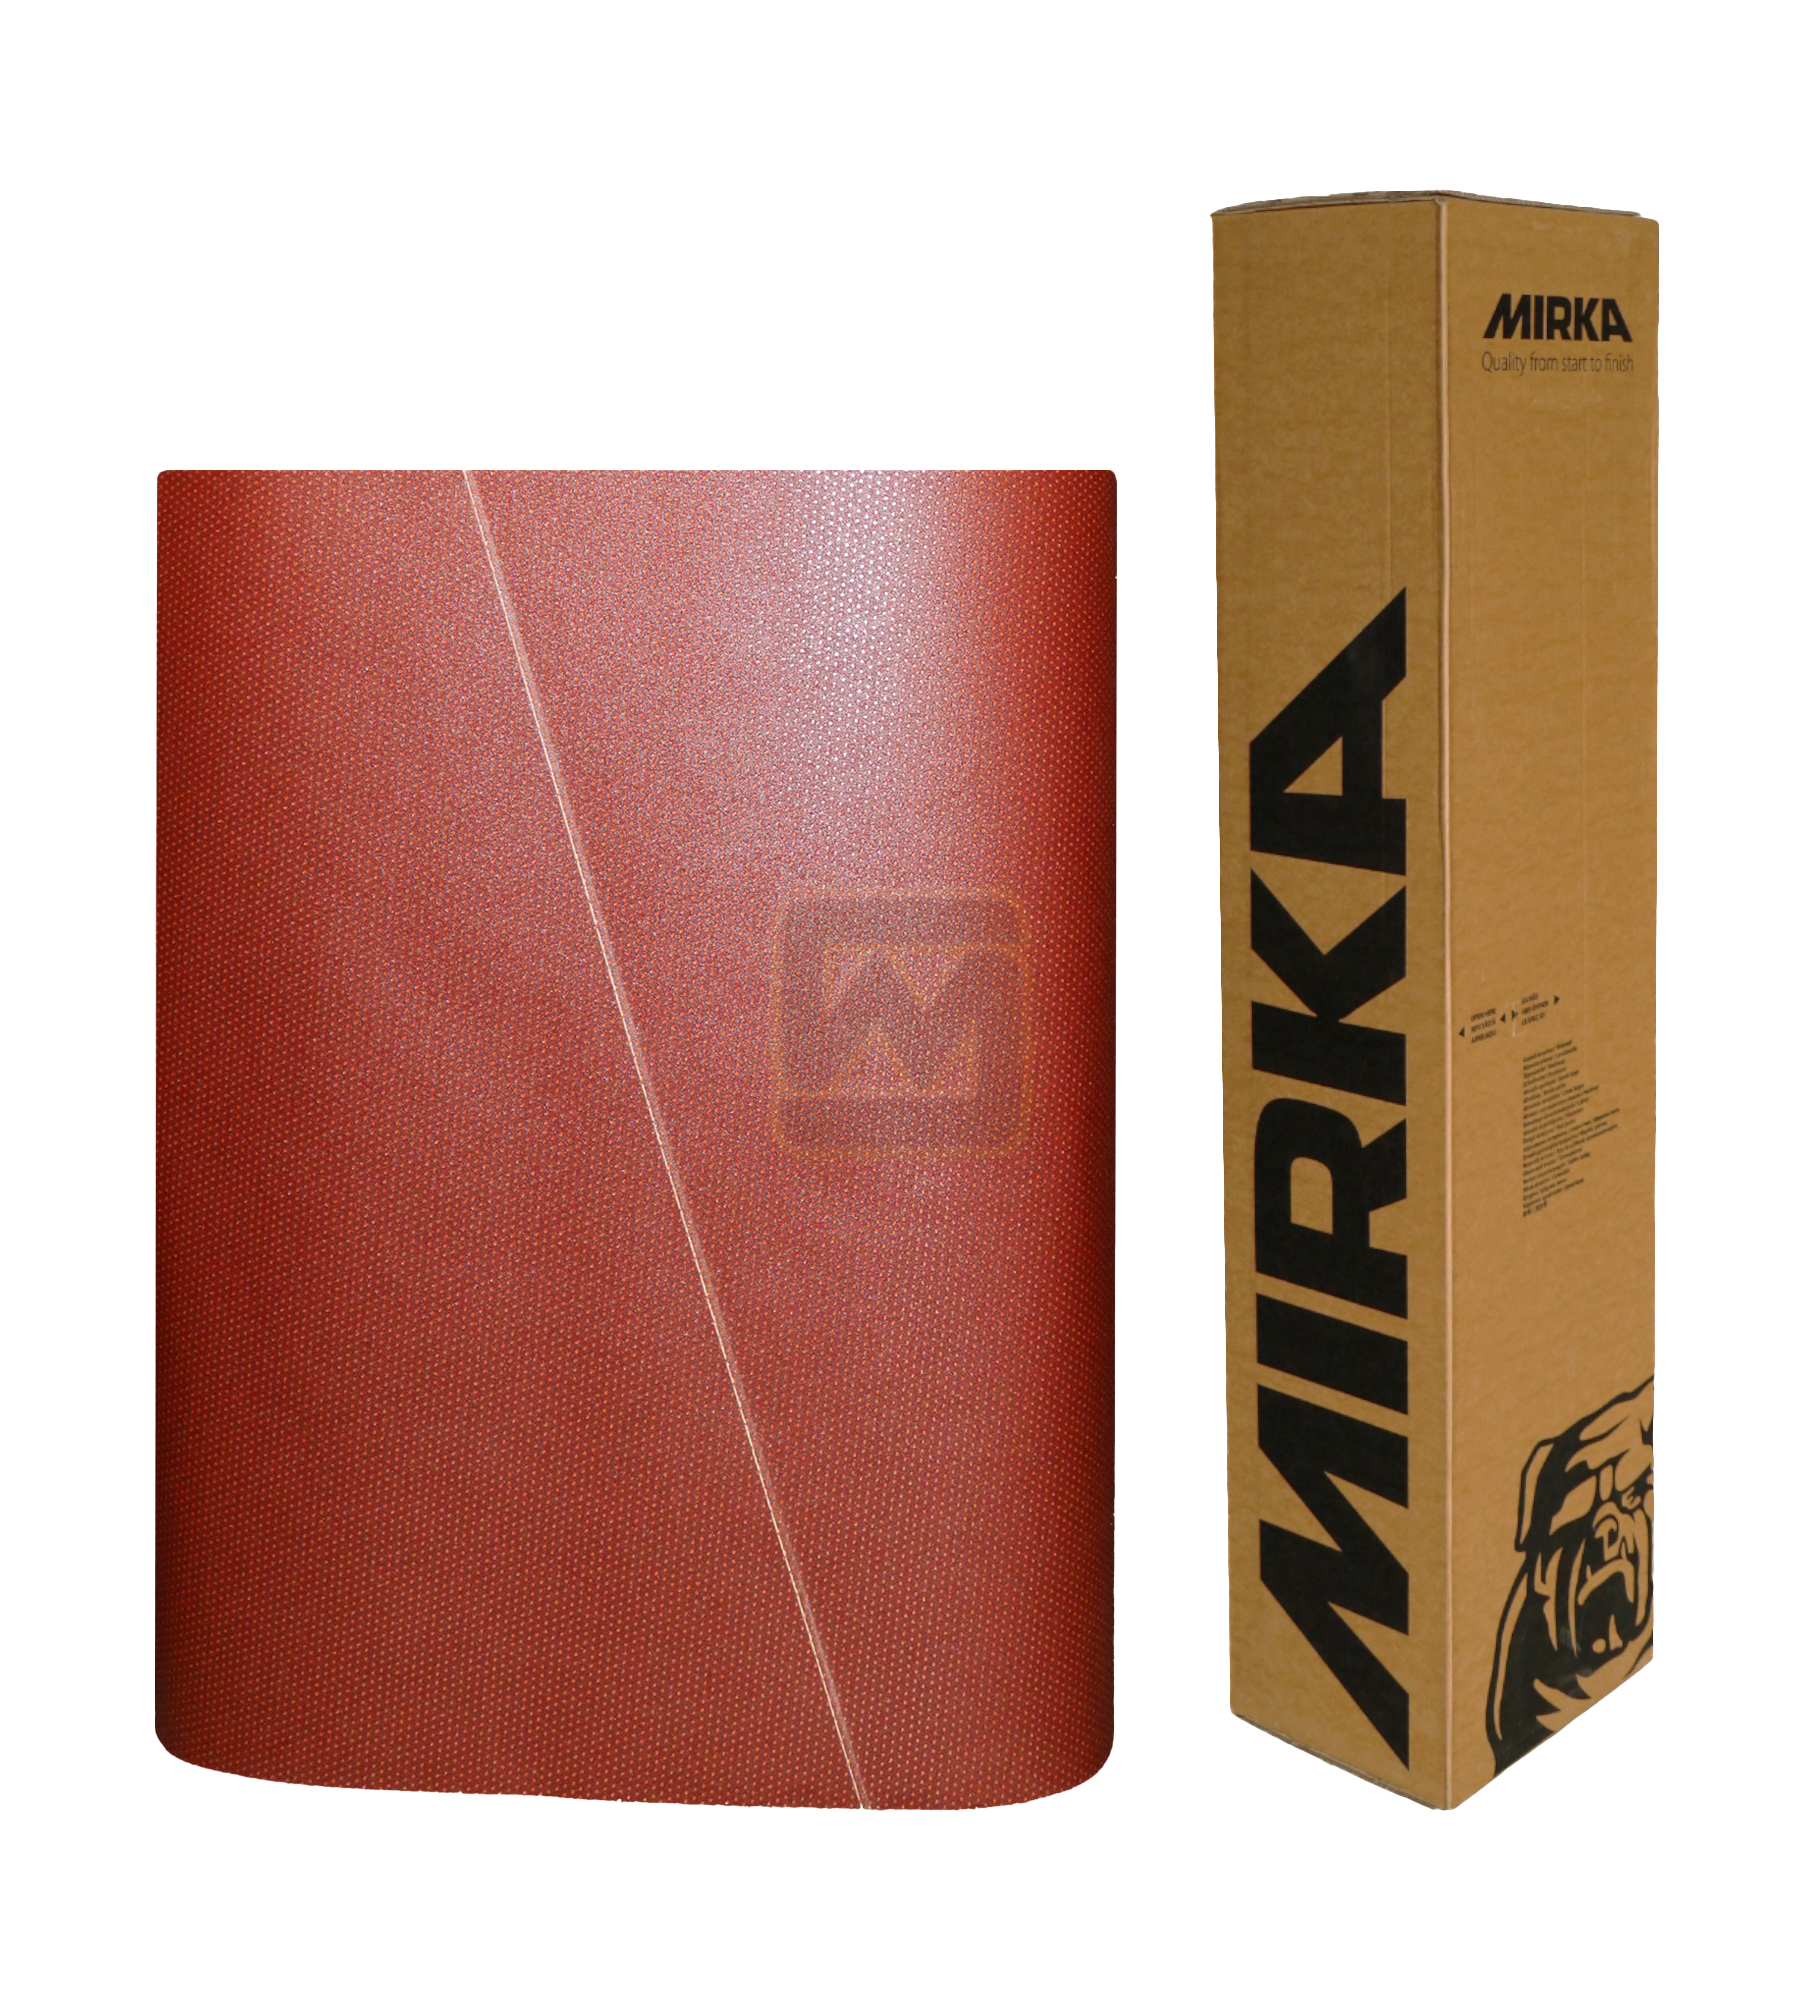 Abbildung Mirka Ultimax 1120x2150mm Breitband mit Verpackung.